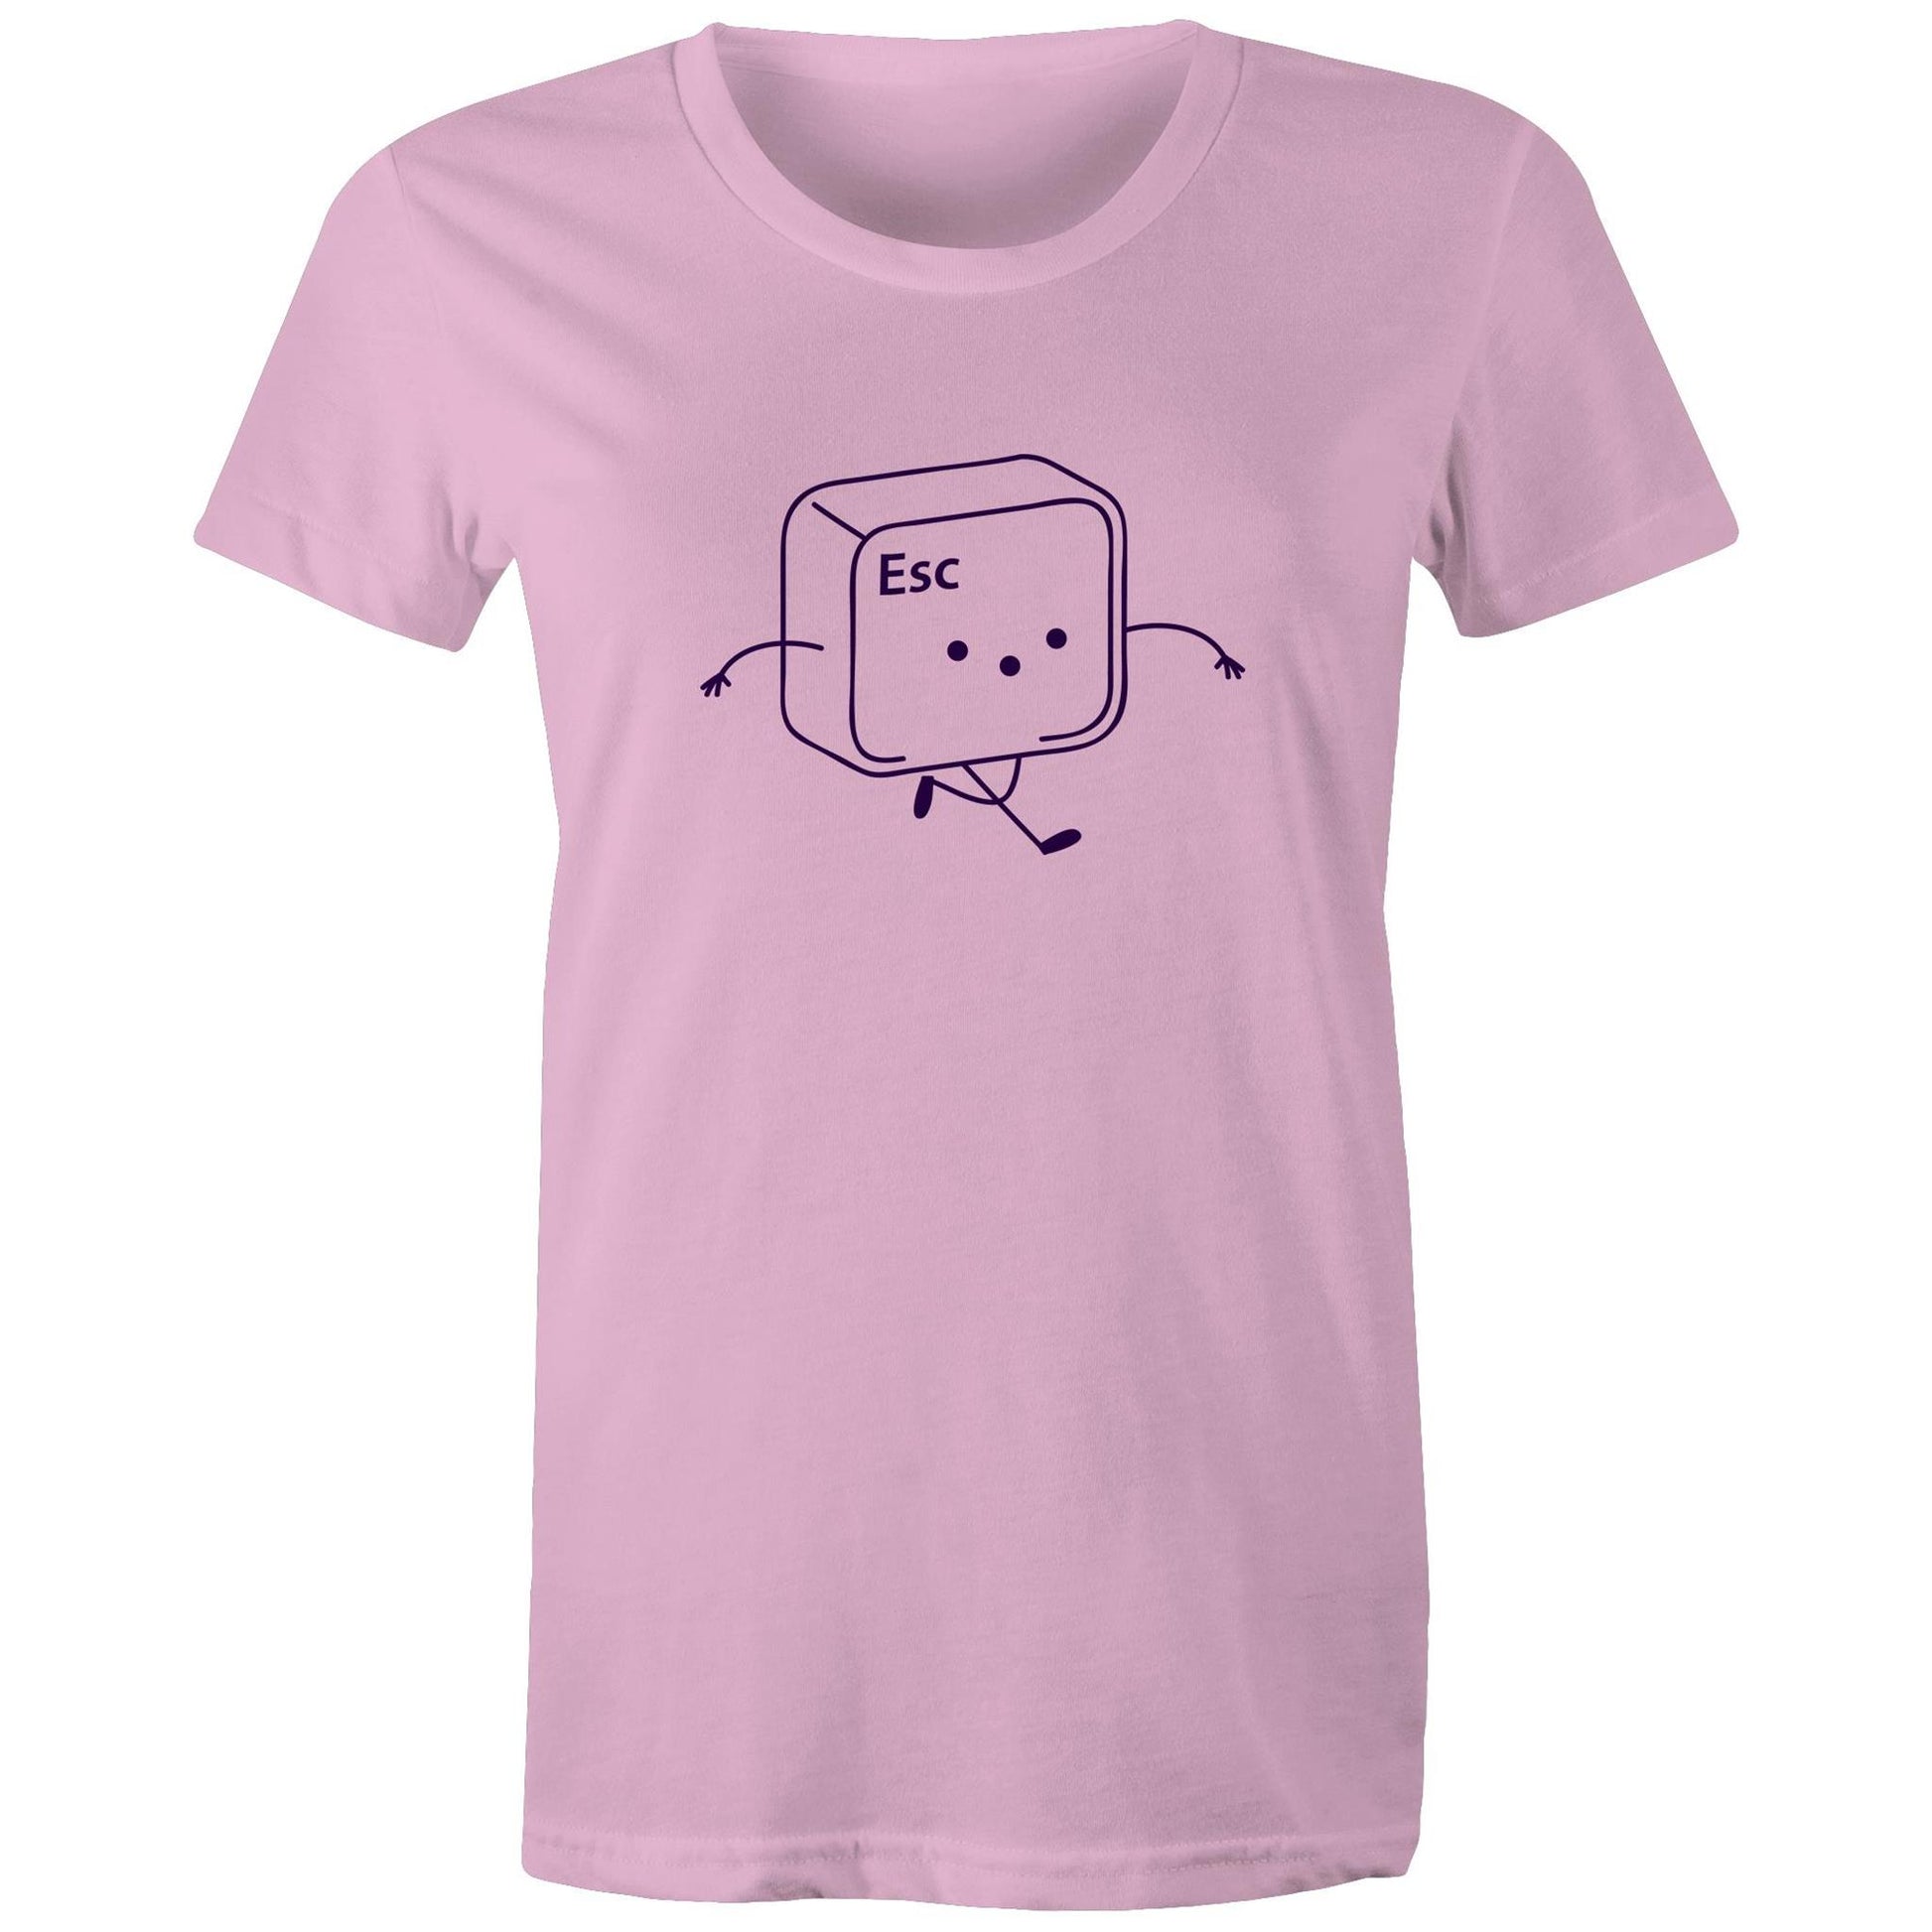 Esc, Escape Key - Womens T-shirt Pink Womens T-shirt Tech